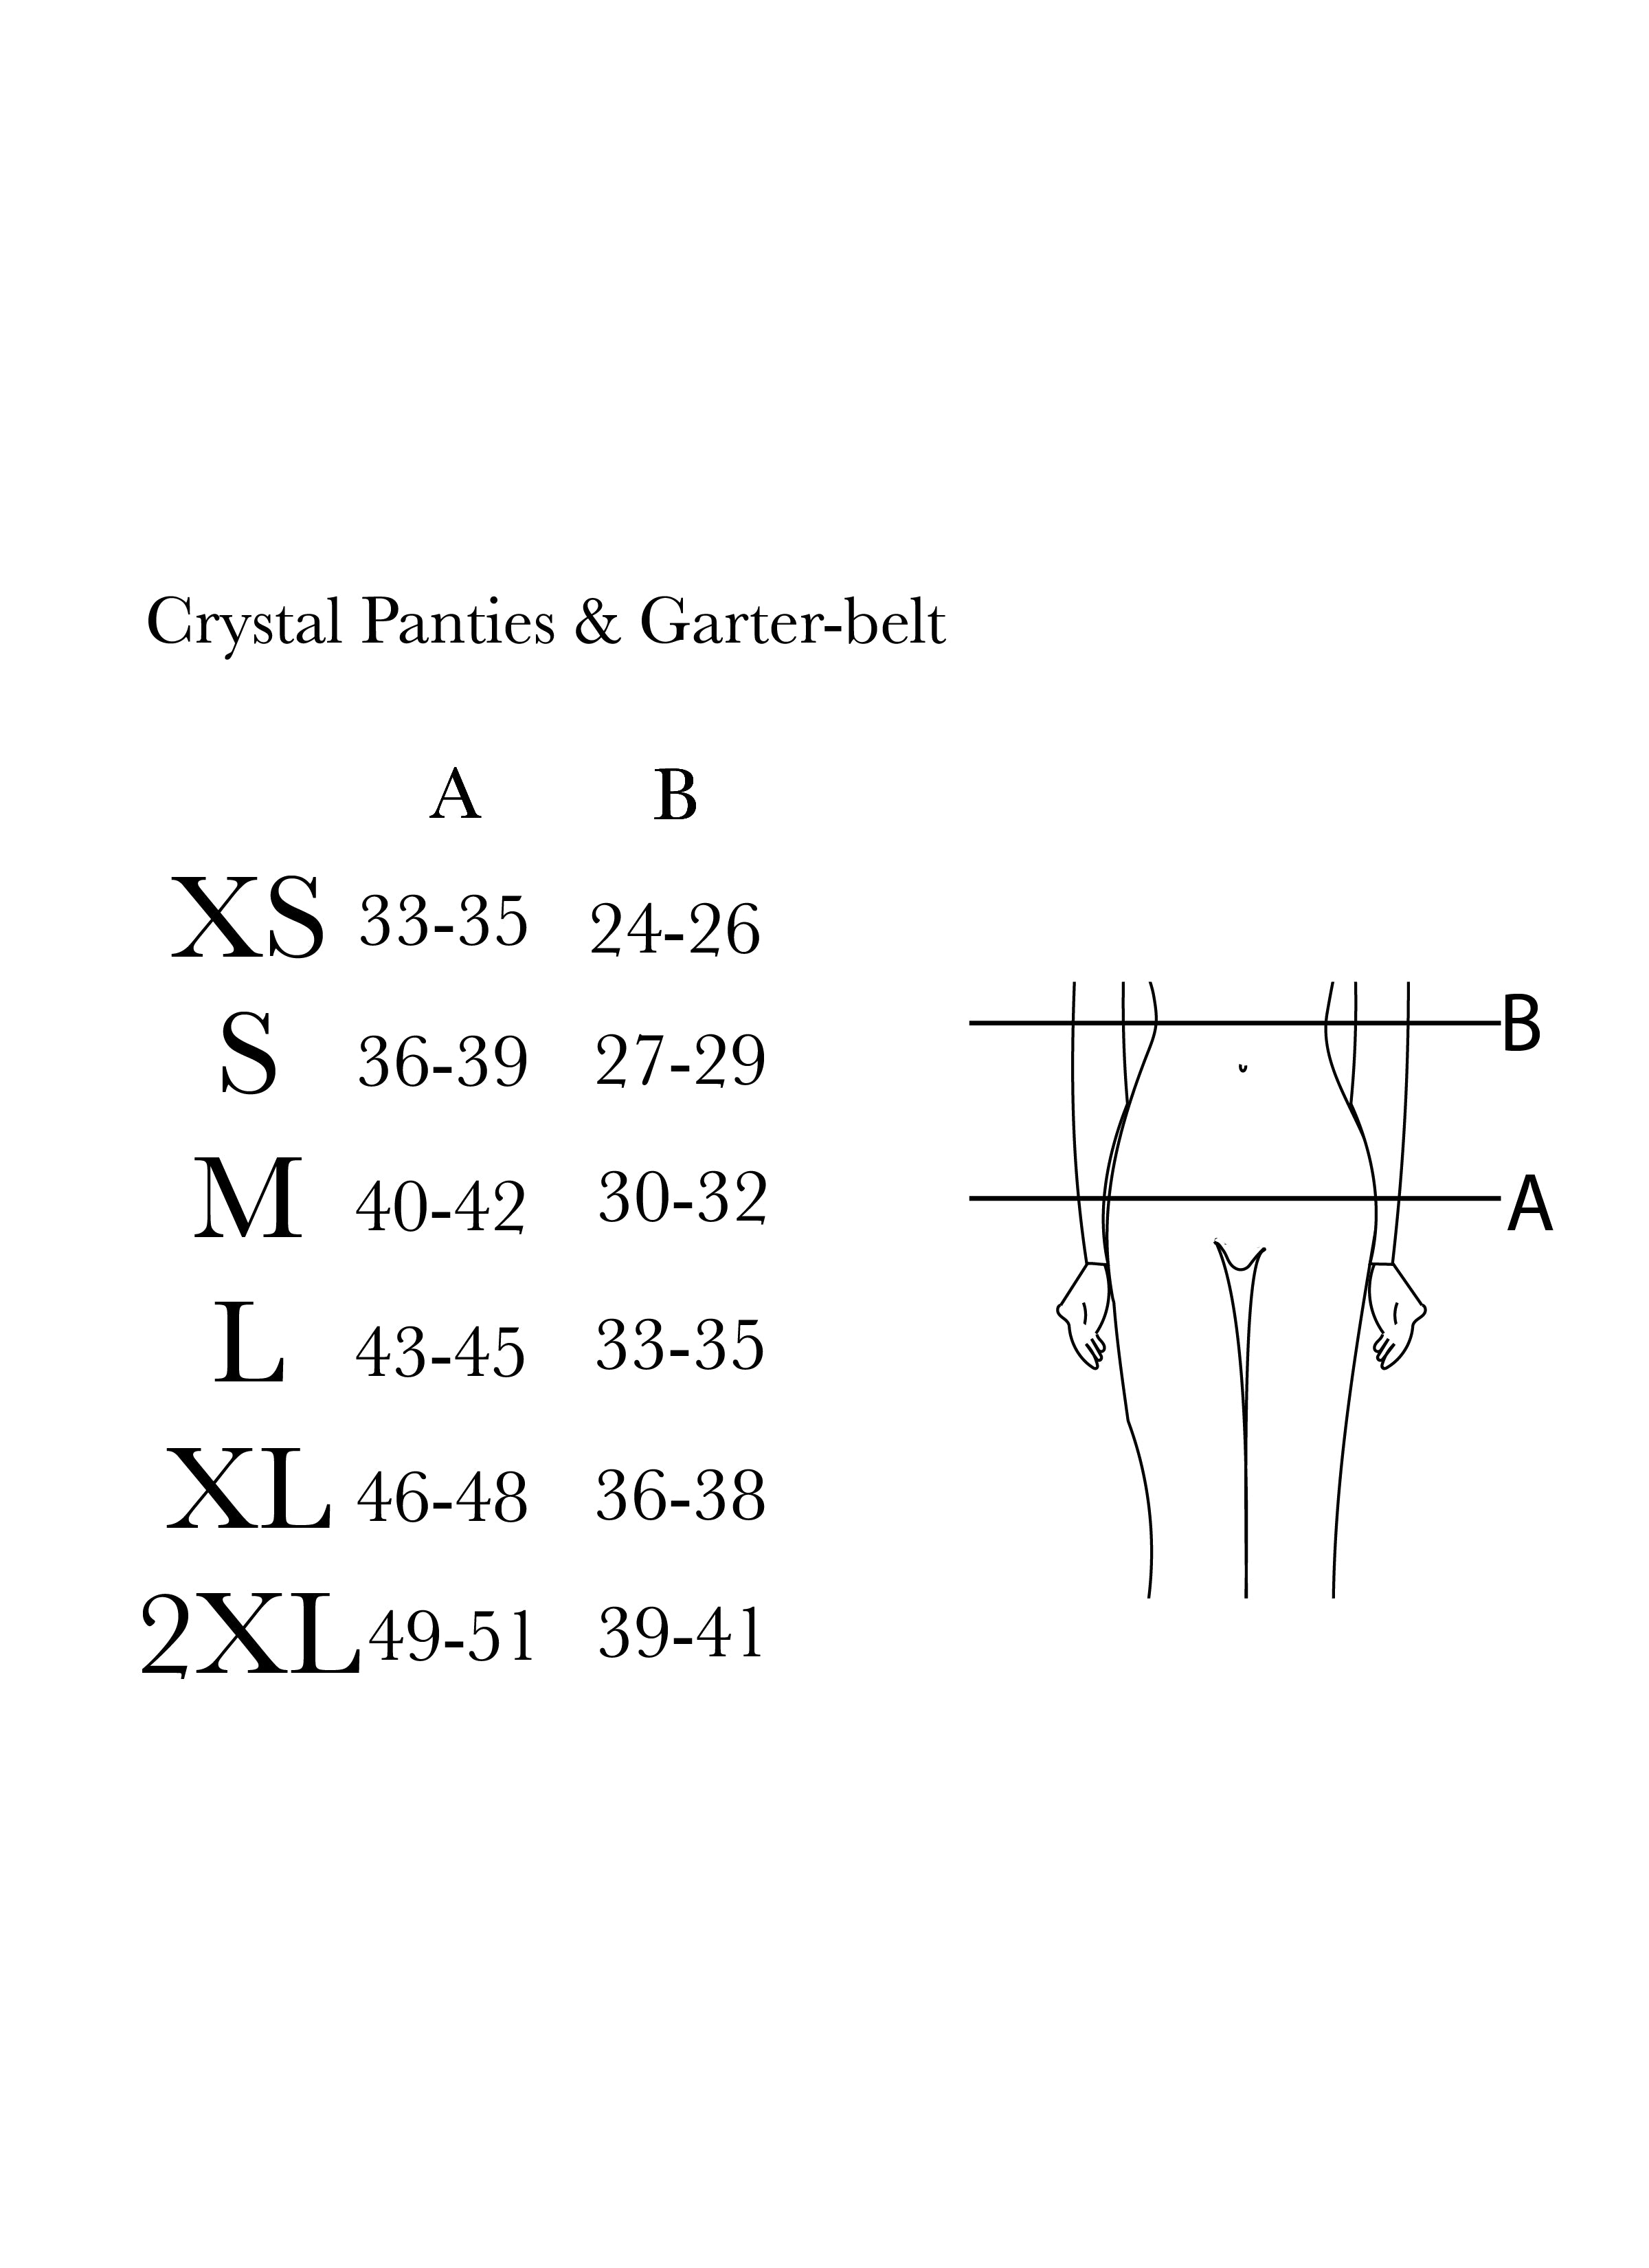 Crystal Garter-belt